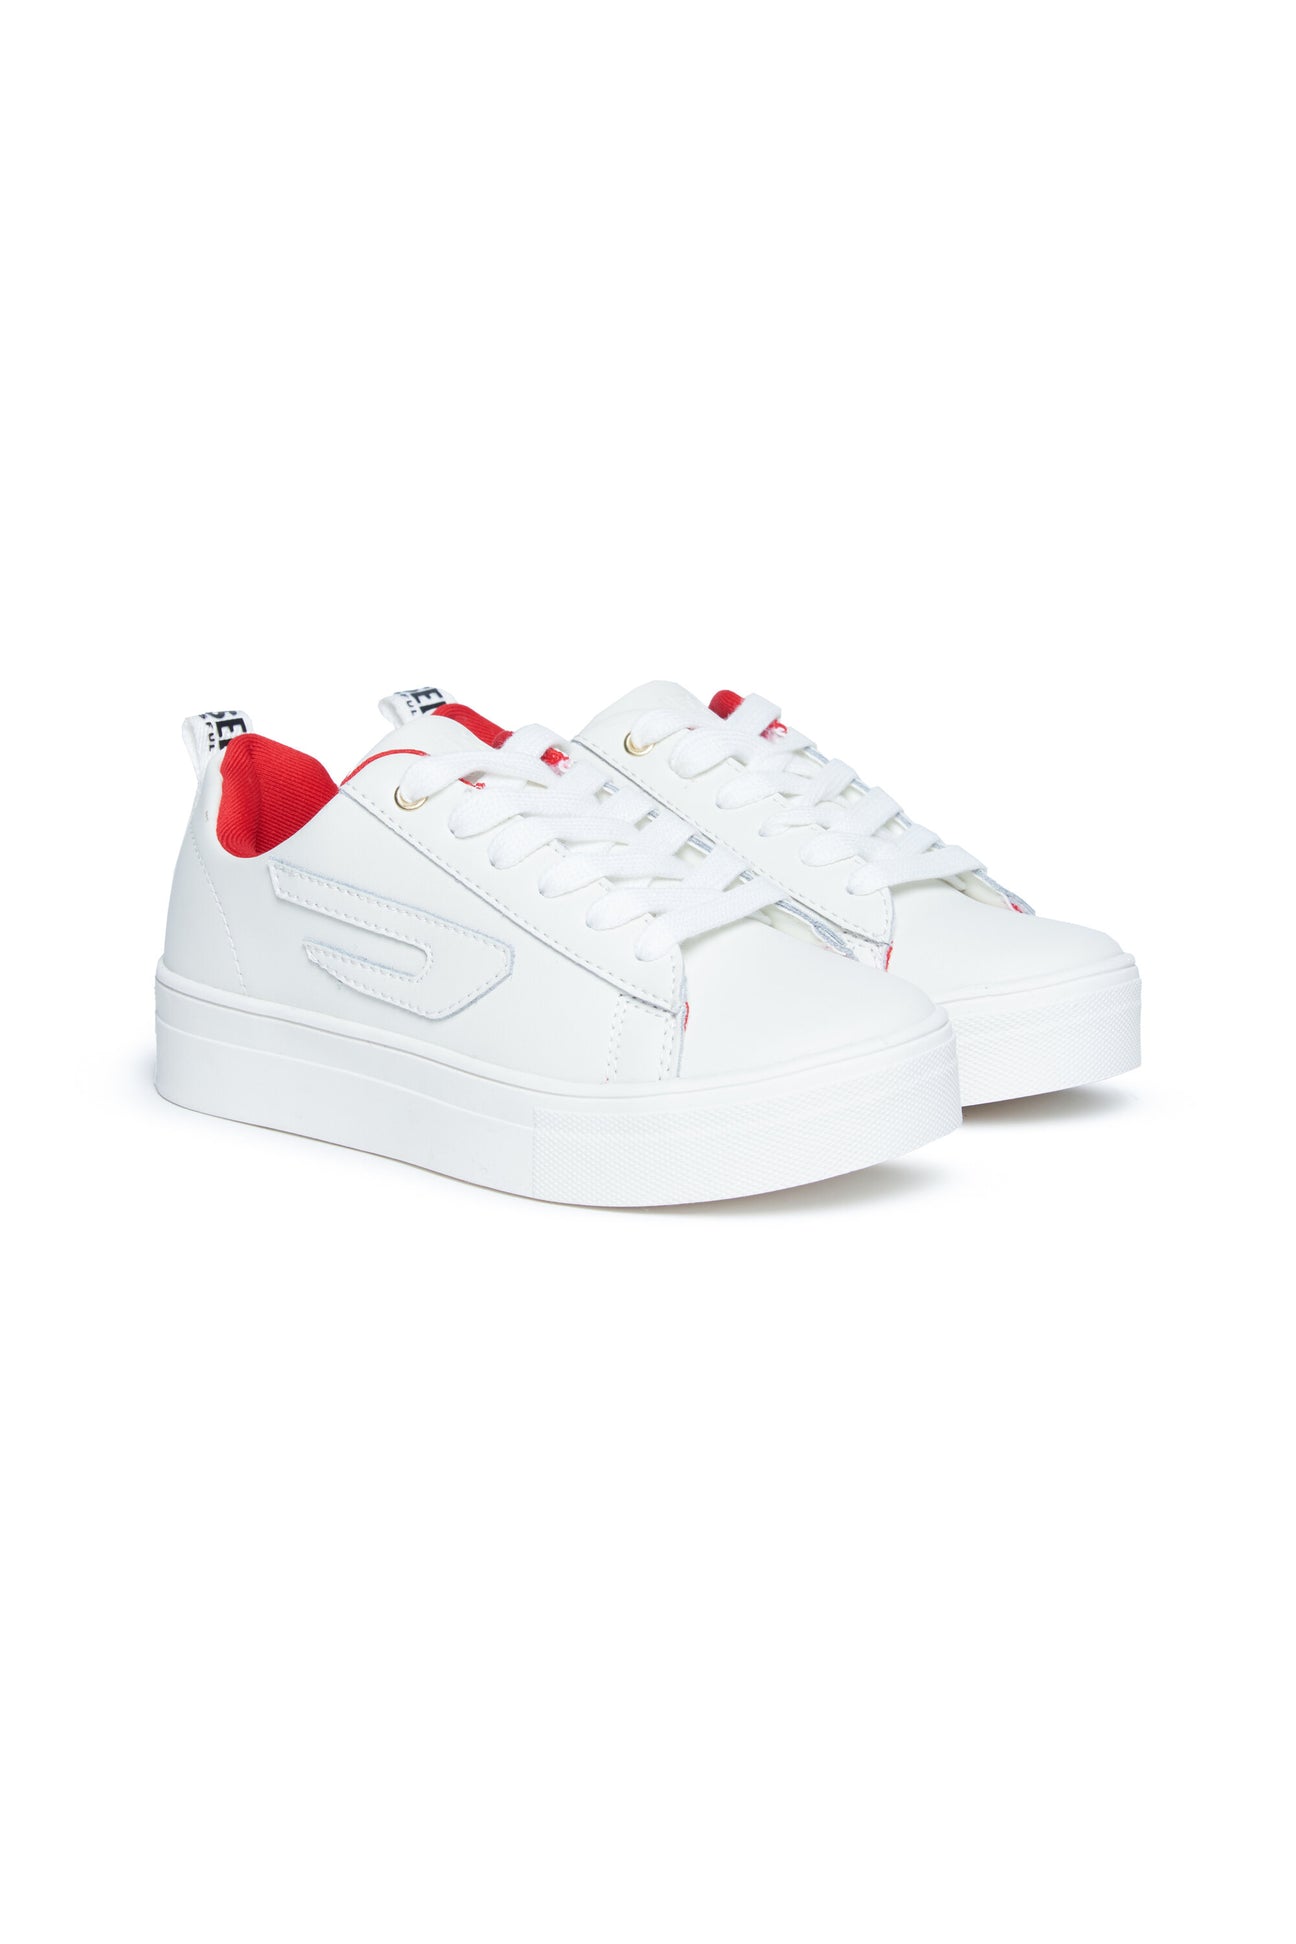 Scarpe sneakers basse bianche Vaneela con D in rilievo Scarpe sneakers basse bianche Vaneela con D in rilievo